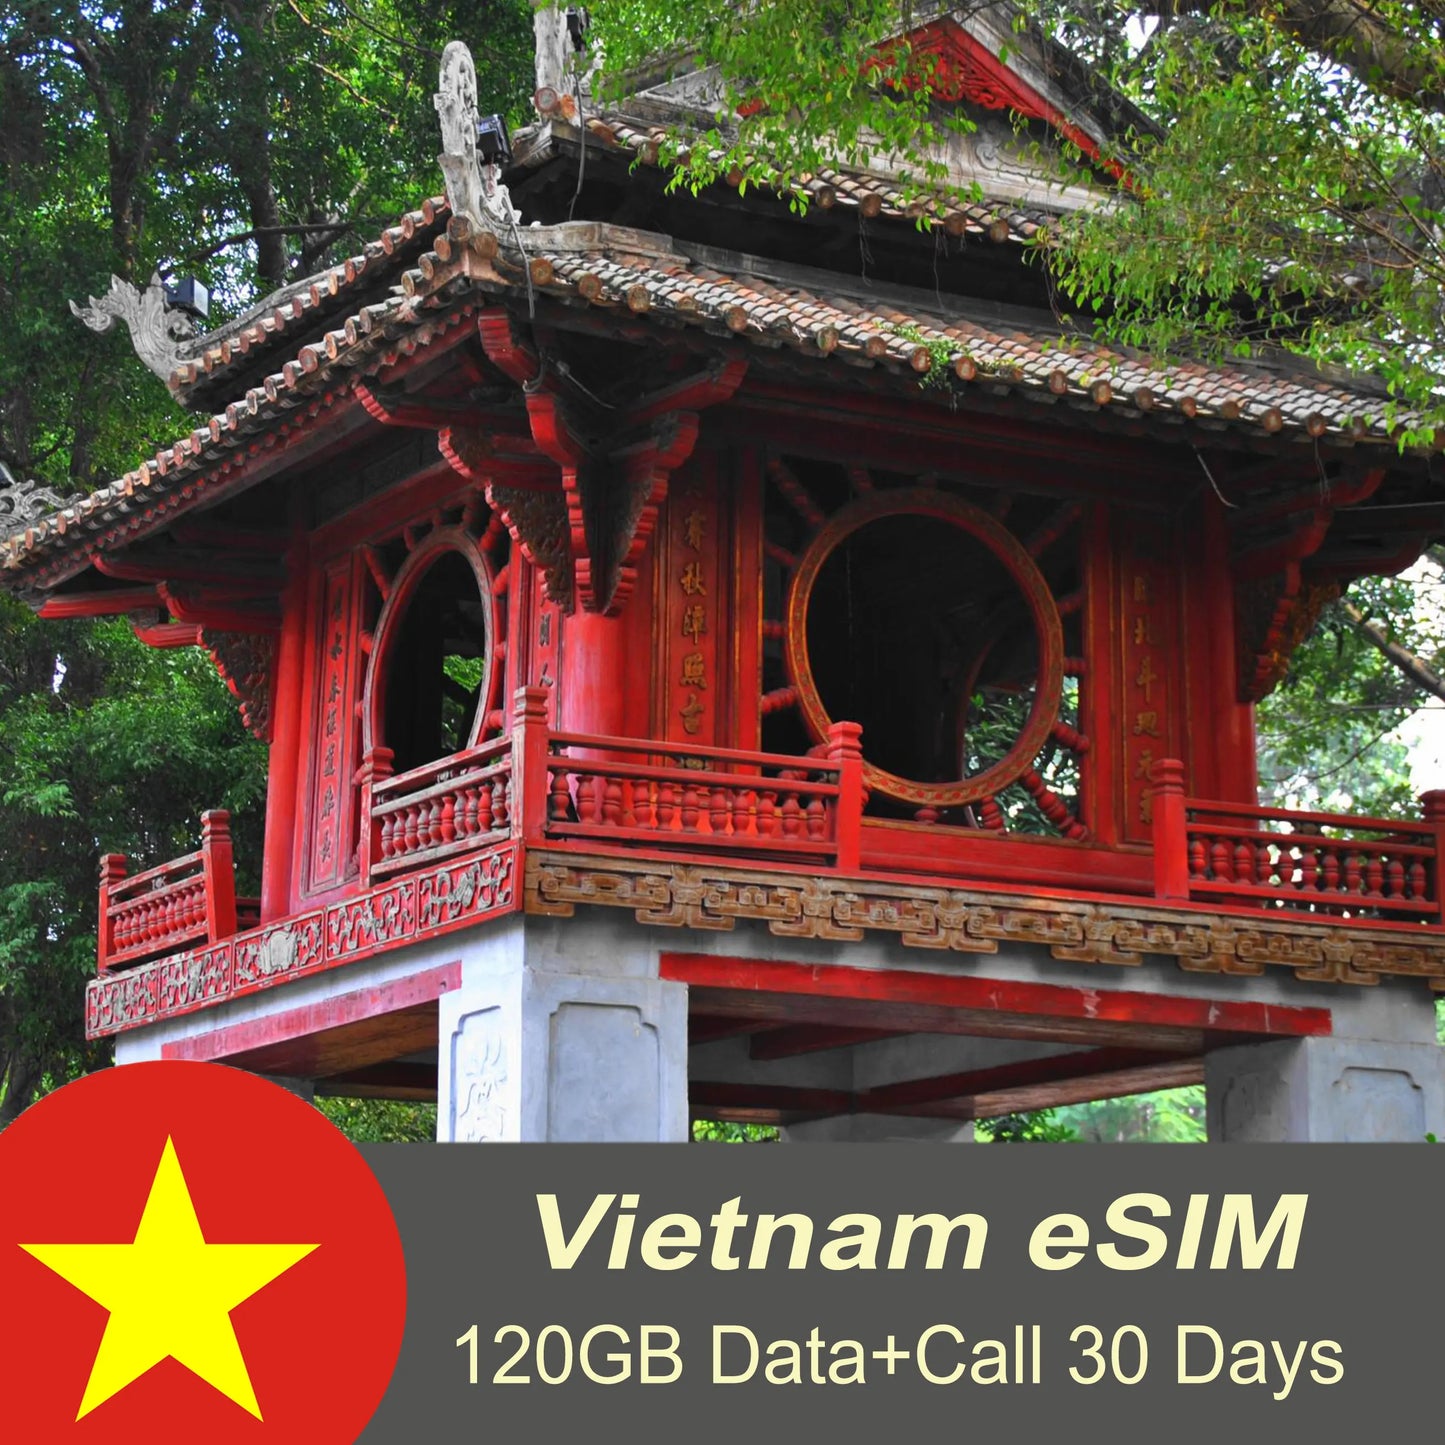 Vietnam eSIM Data 120GB + Calls for 30 days